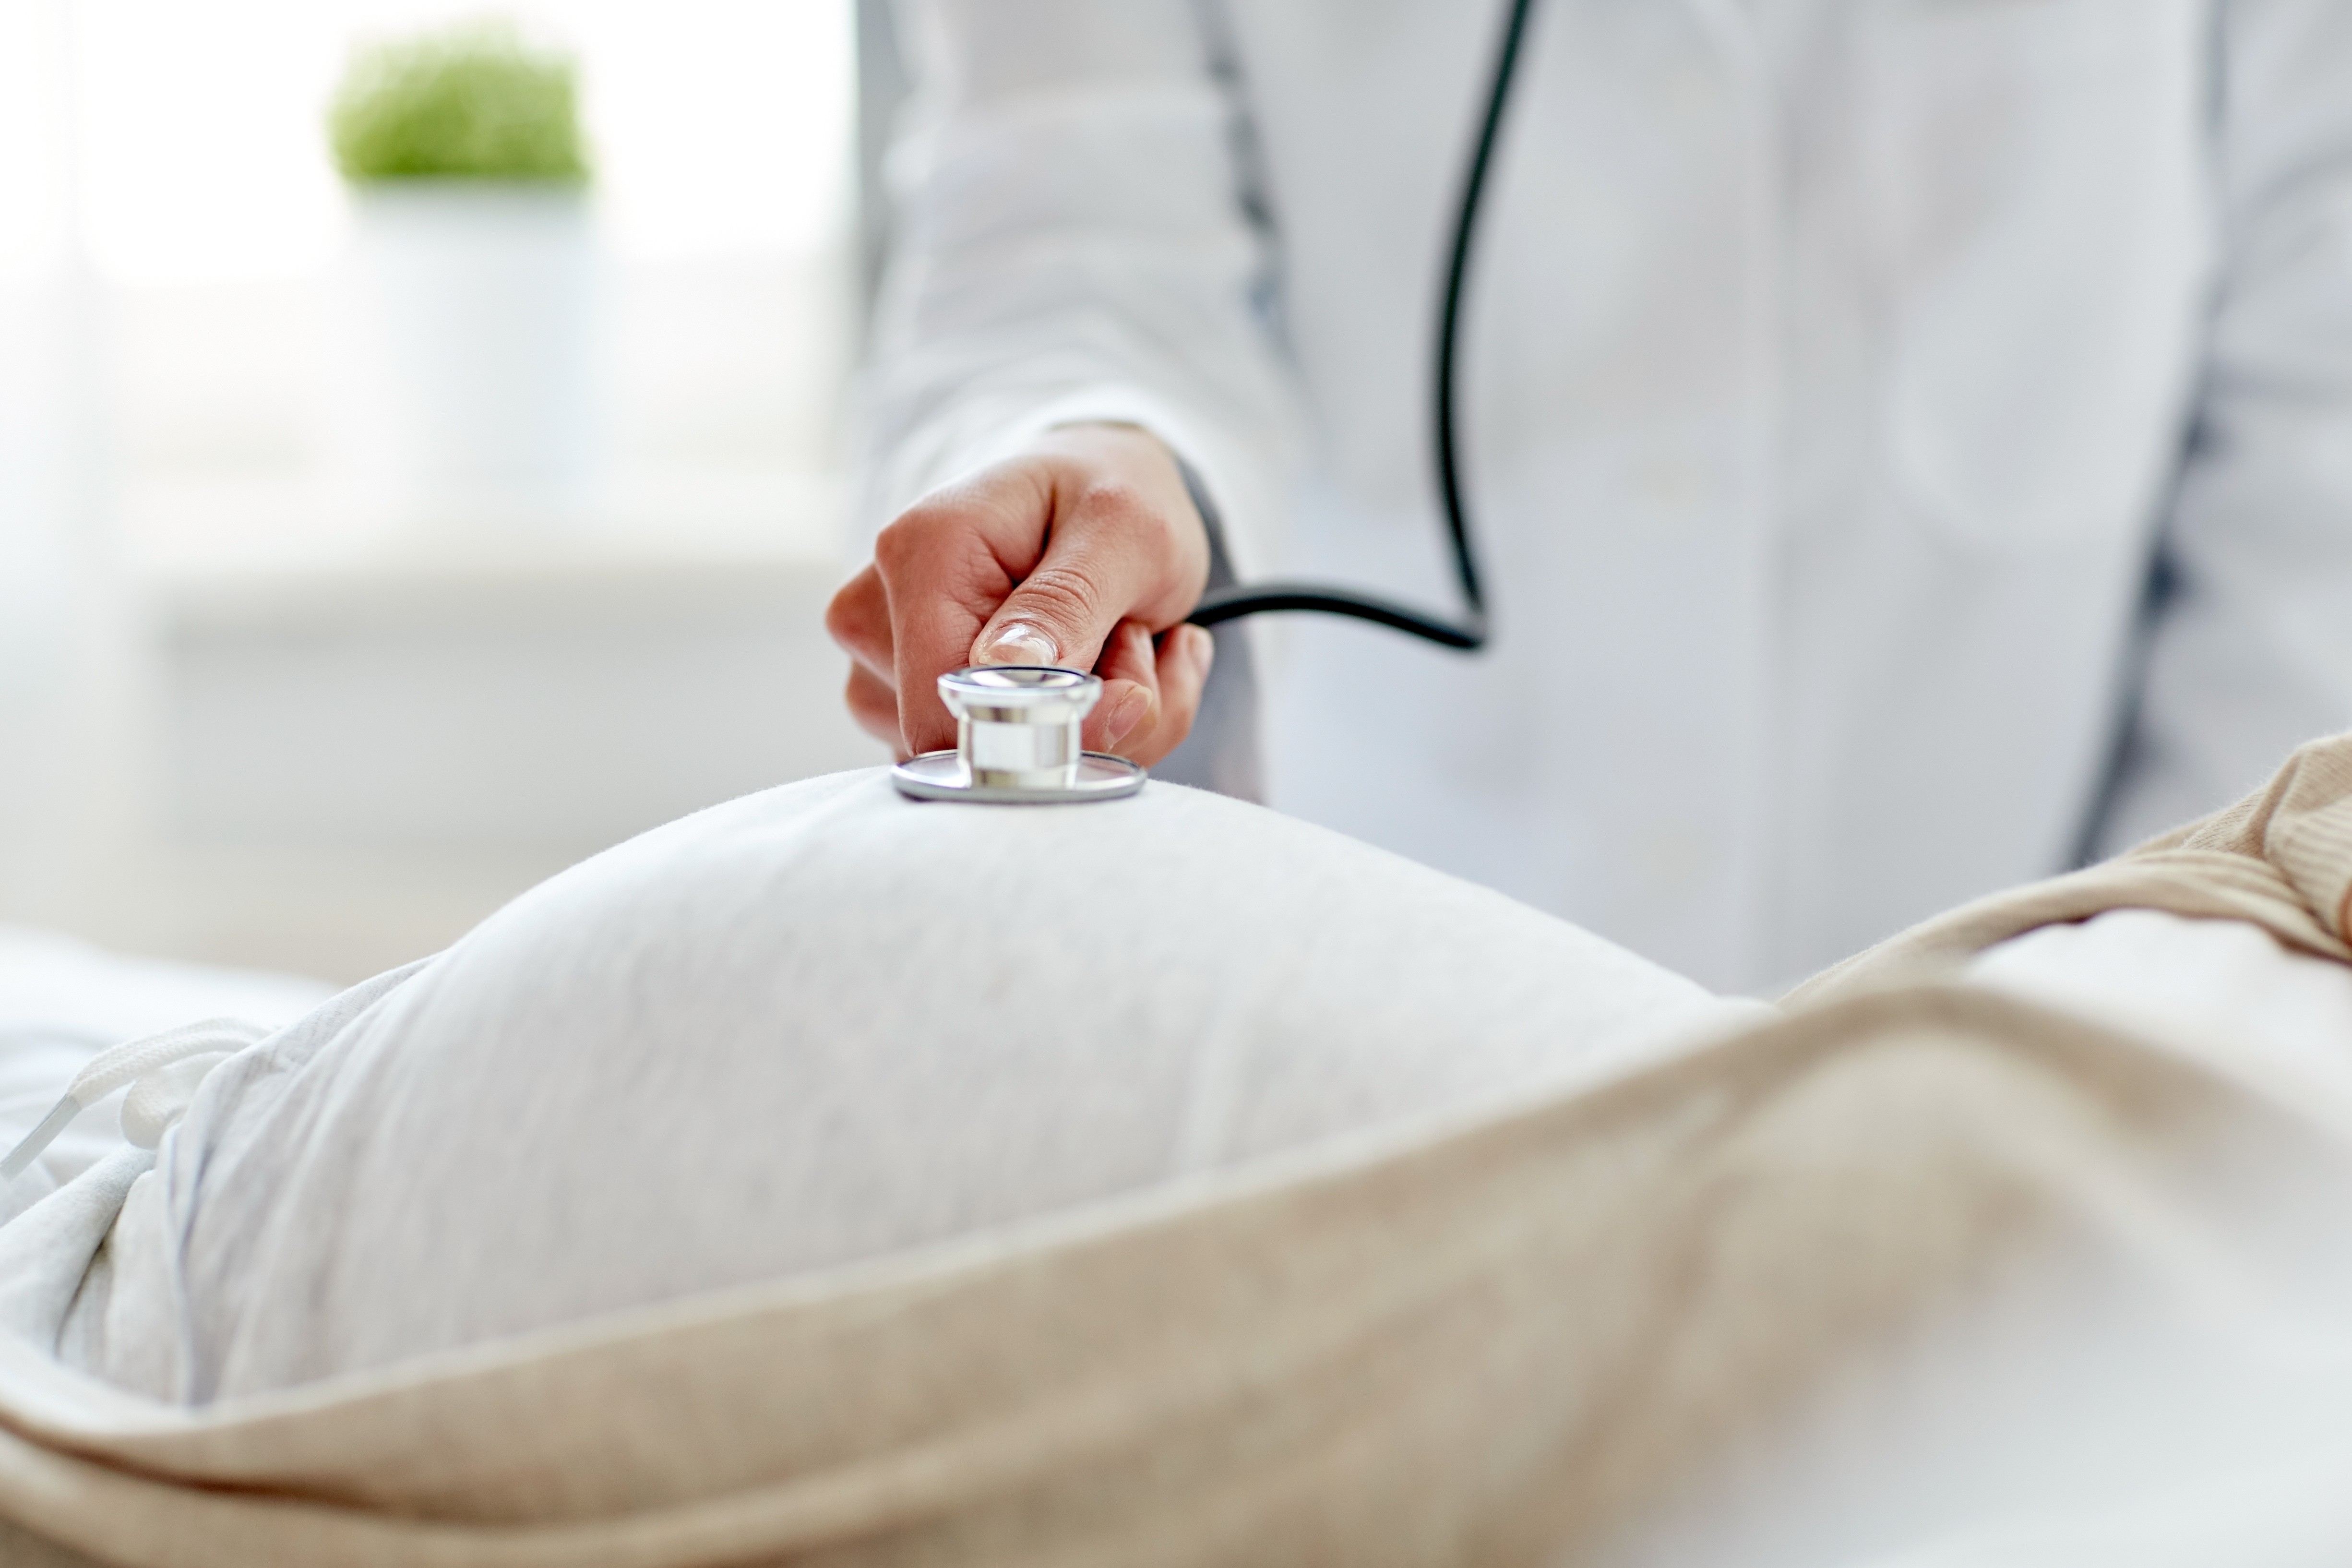 Saúde da mãe e cérebro do bebê: como a má nutrição na gravidez pode afetar gerações futuras e perpetuar a desigualdade